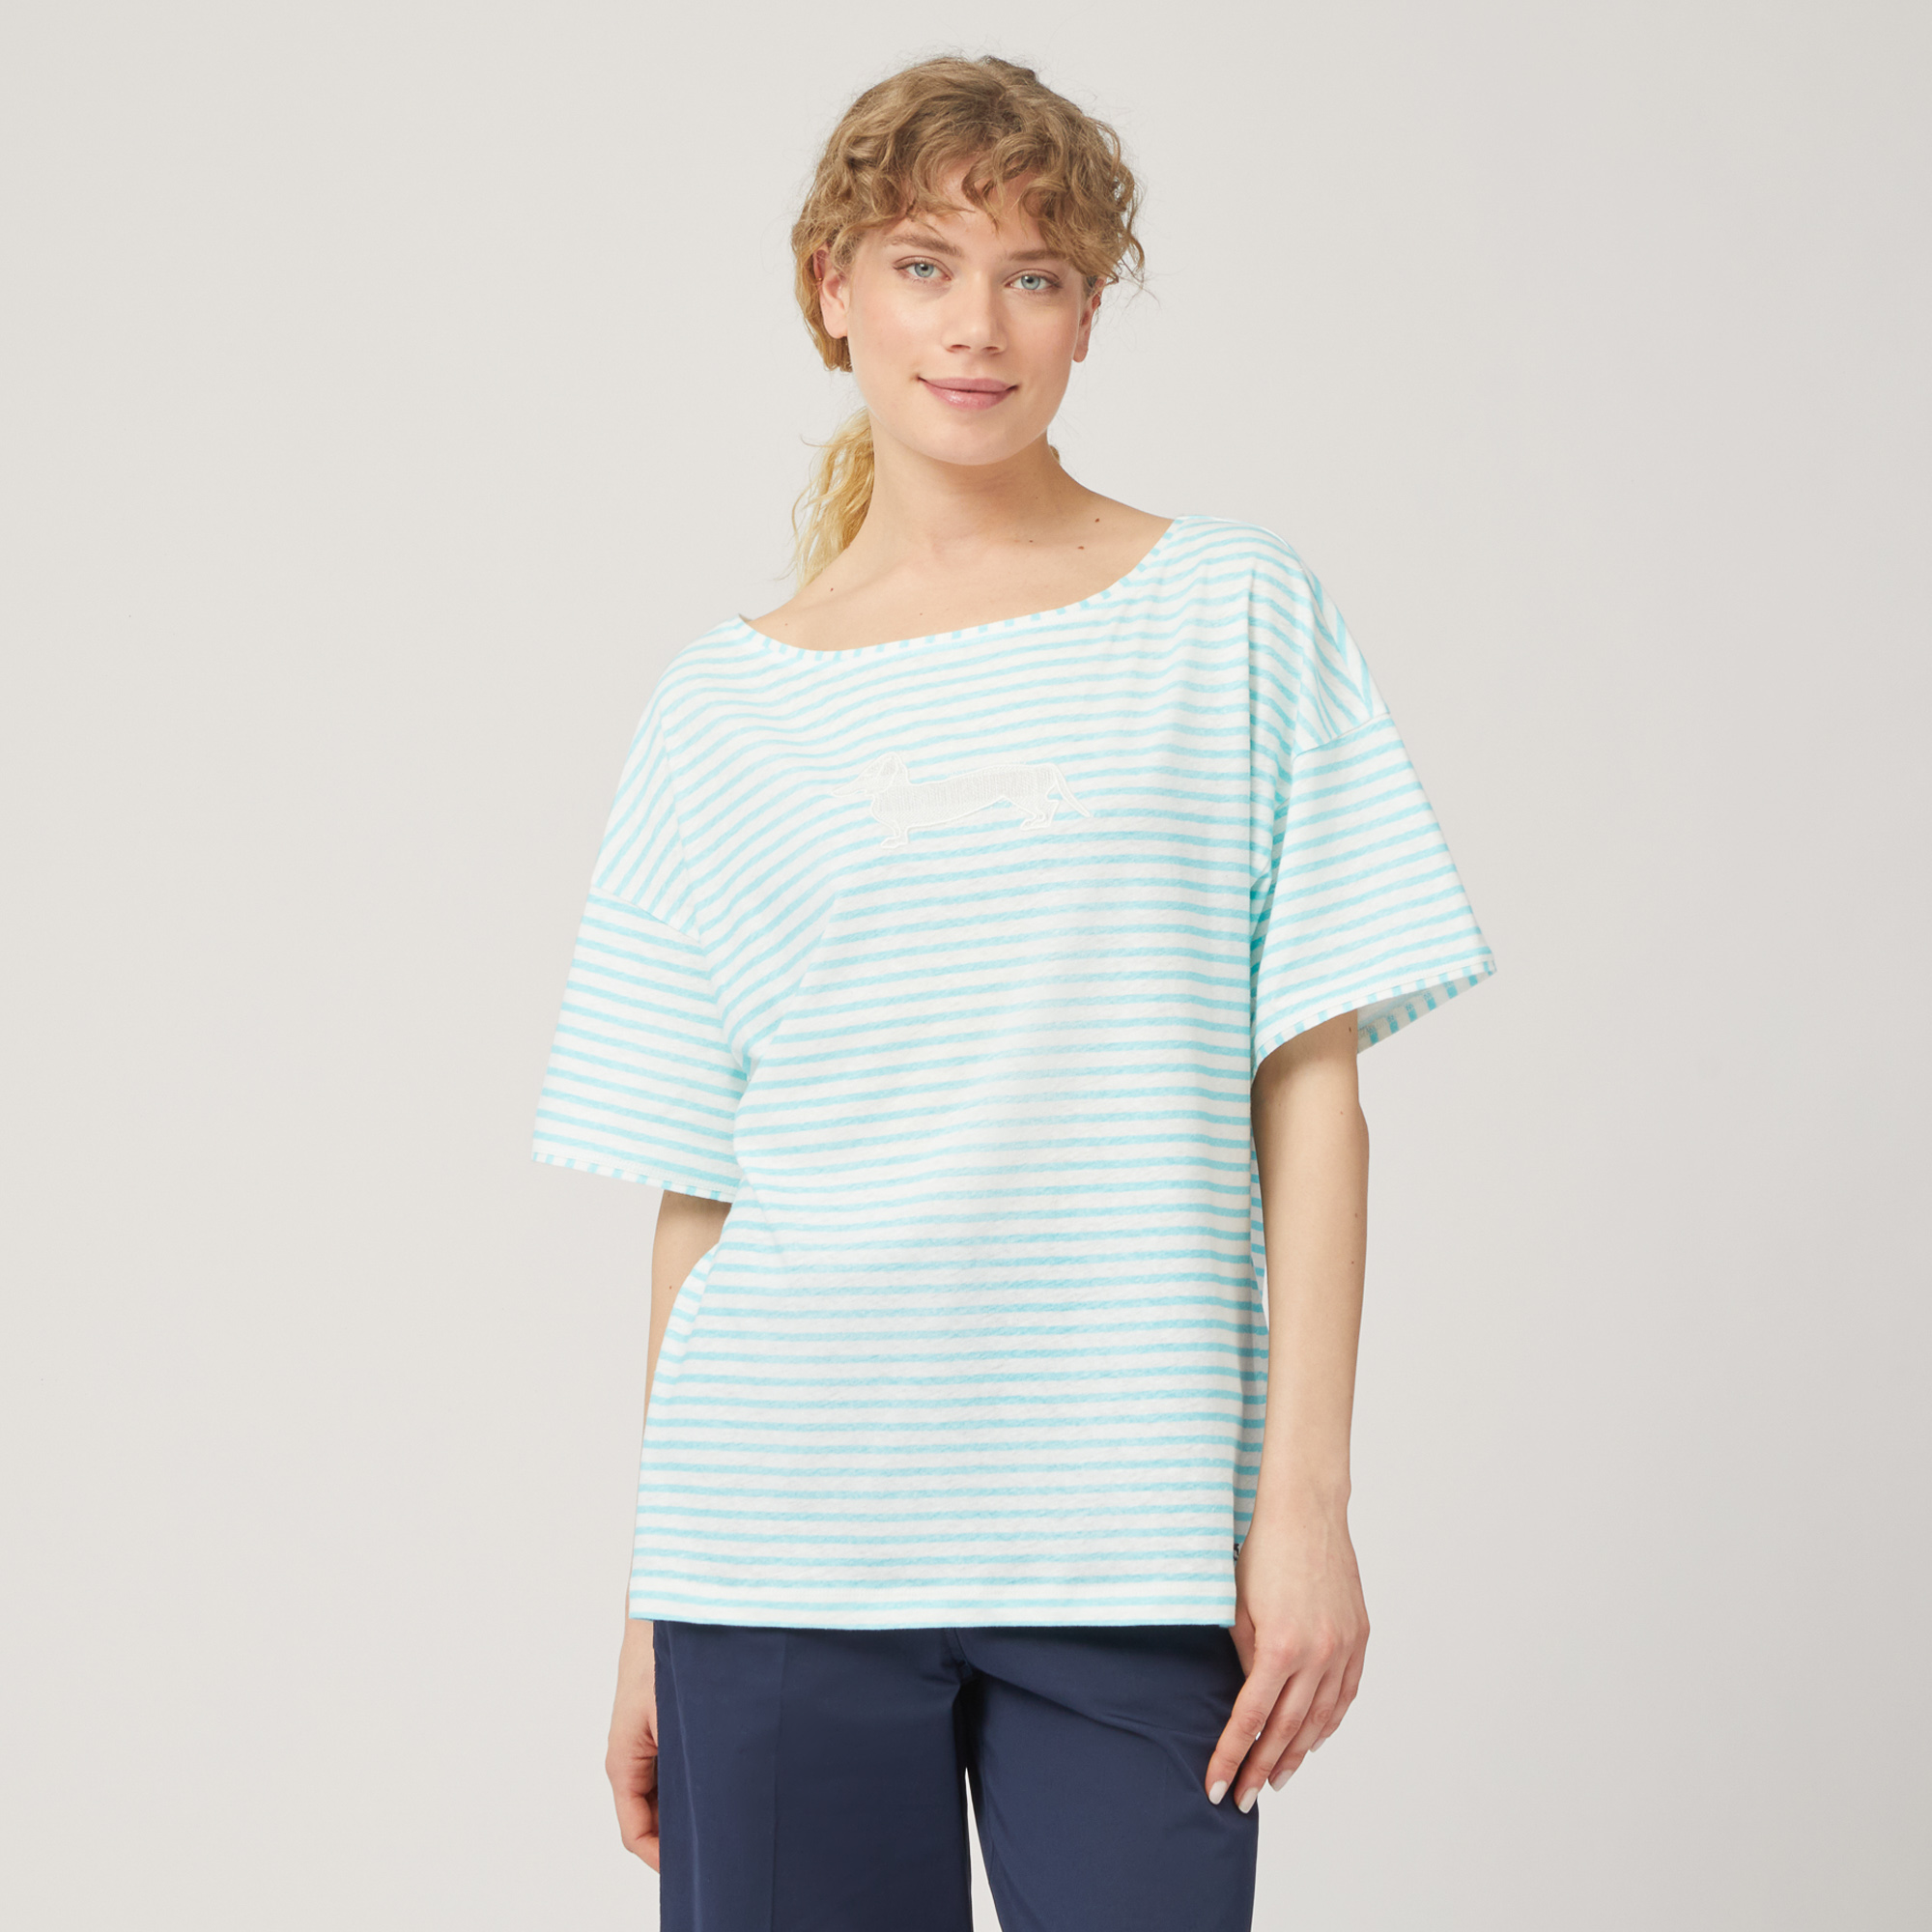 Striped Comfort Fit T-Shirt, Light Blue, large image number 0